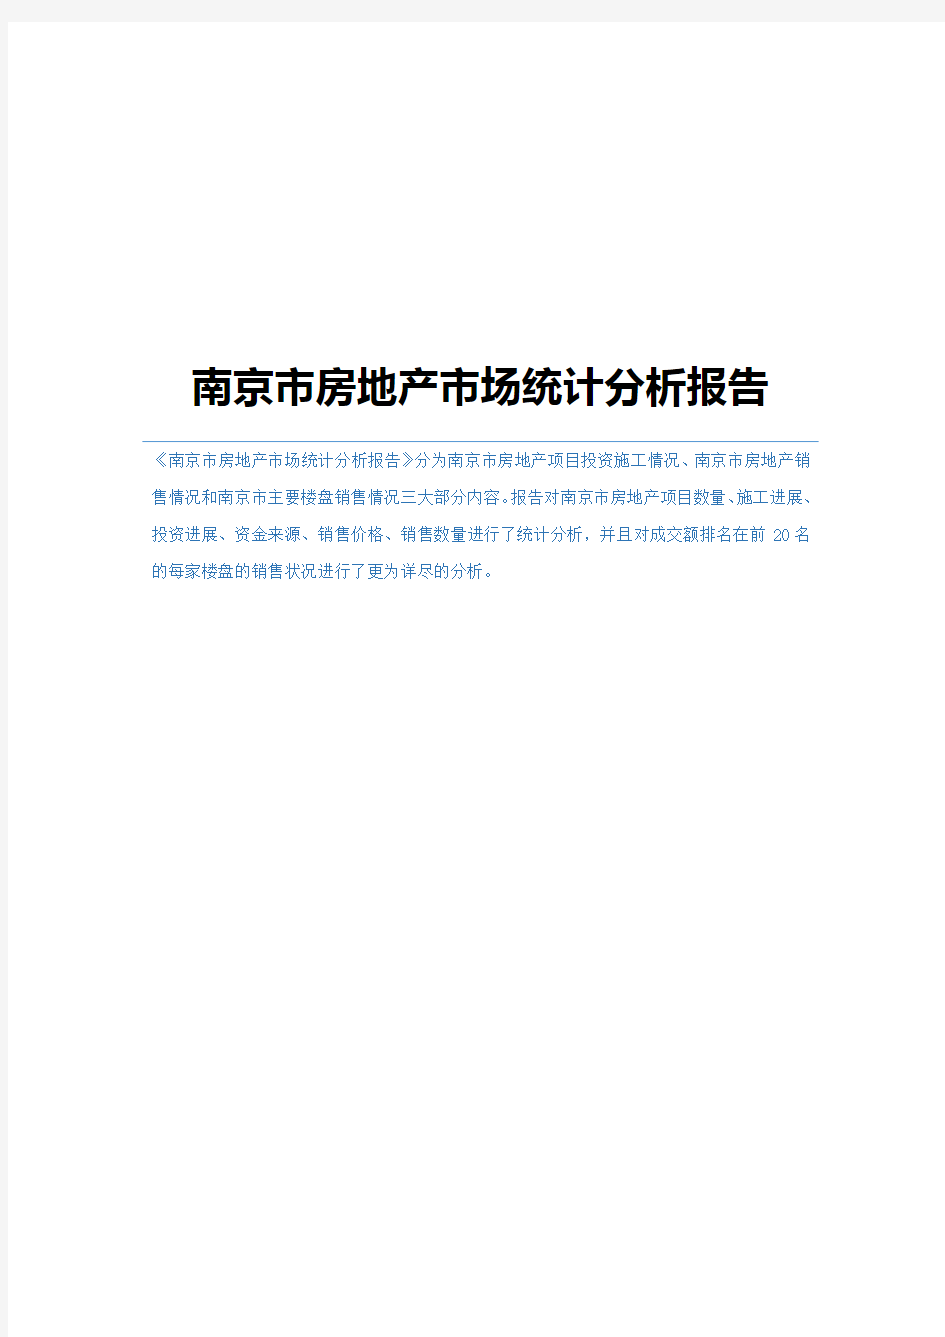 南京市房地产市场统计分析报告